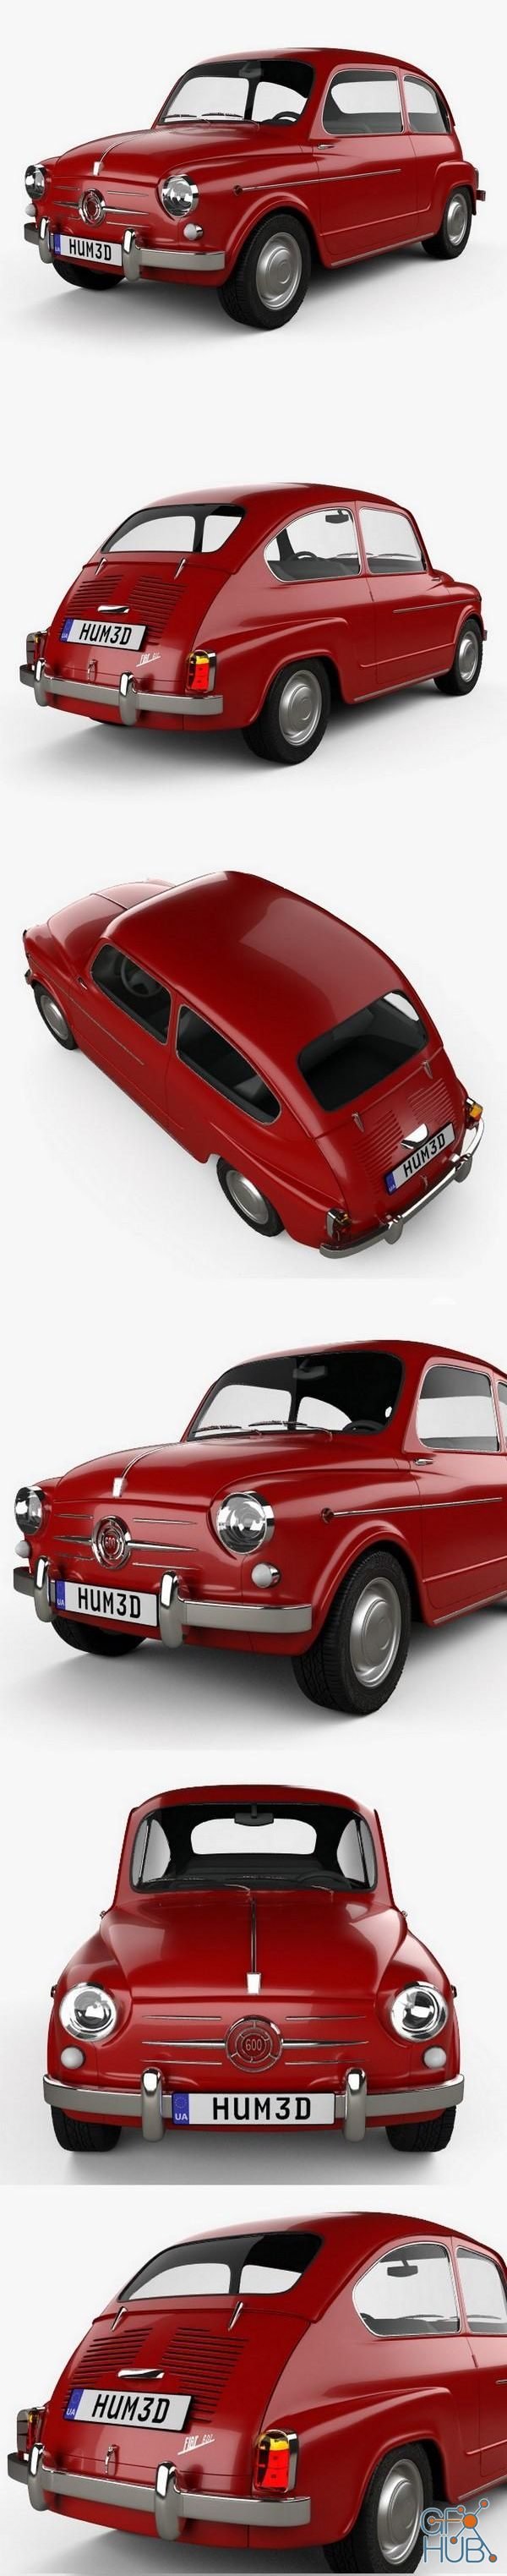 Car Fiat 600 D 1960